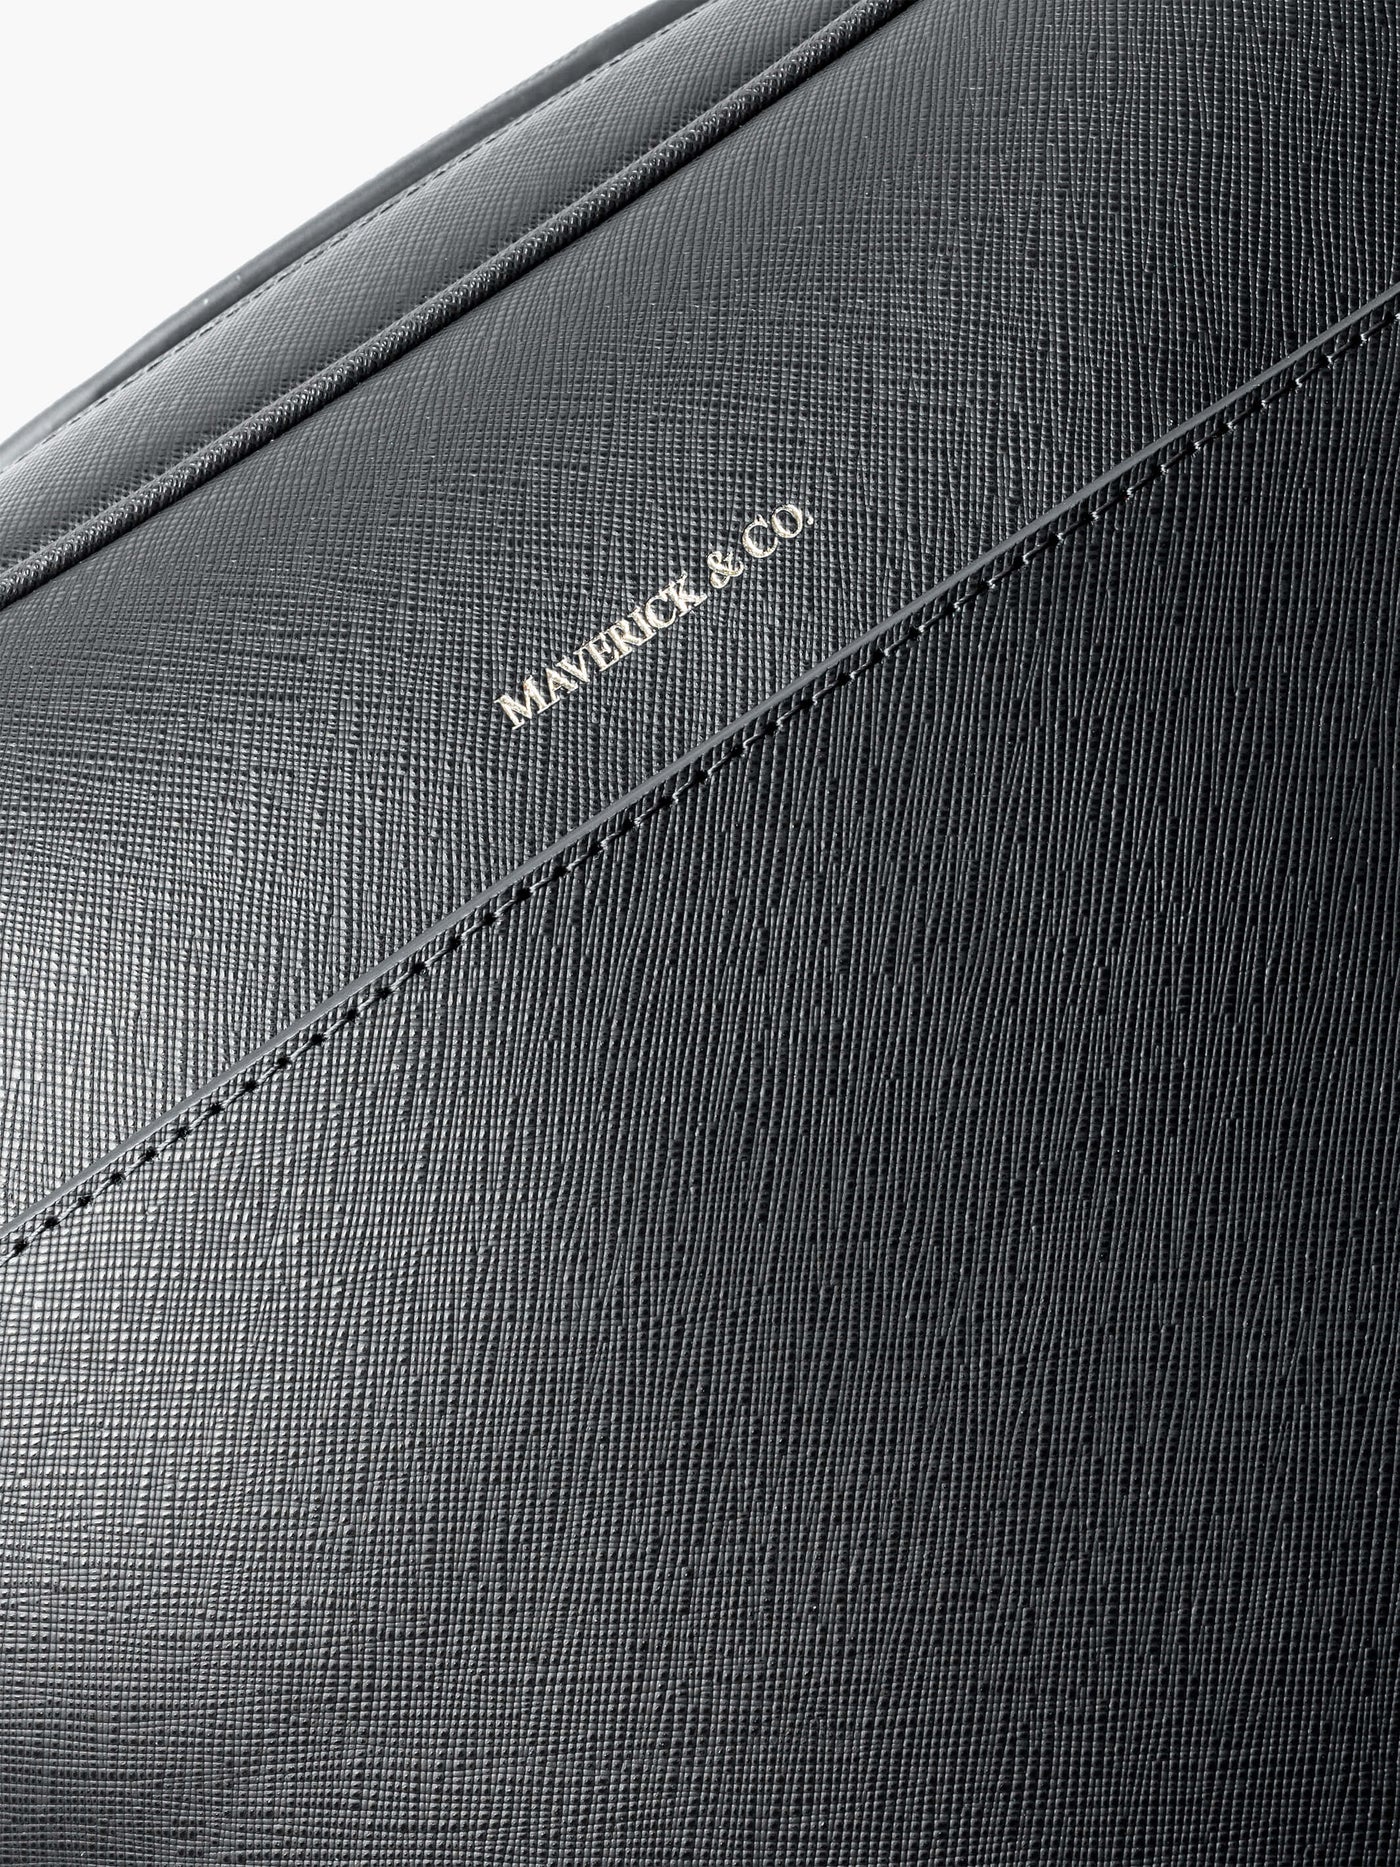 Maverick & Co. - Metropolitan Business Backpack #color_black